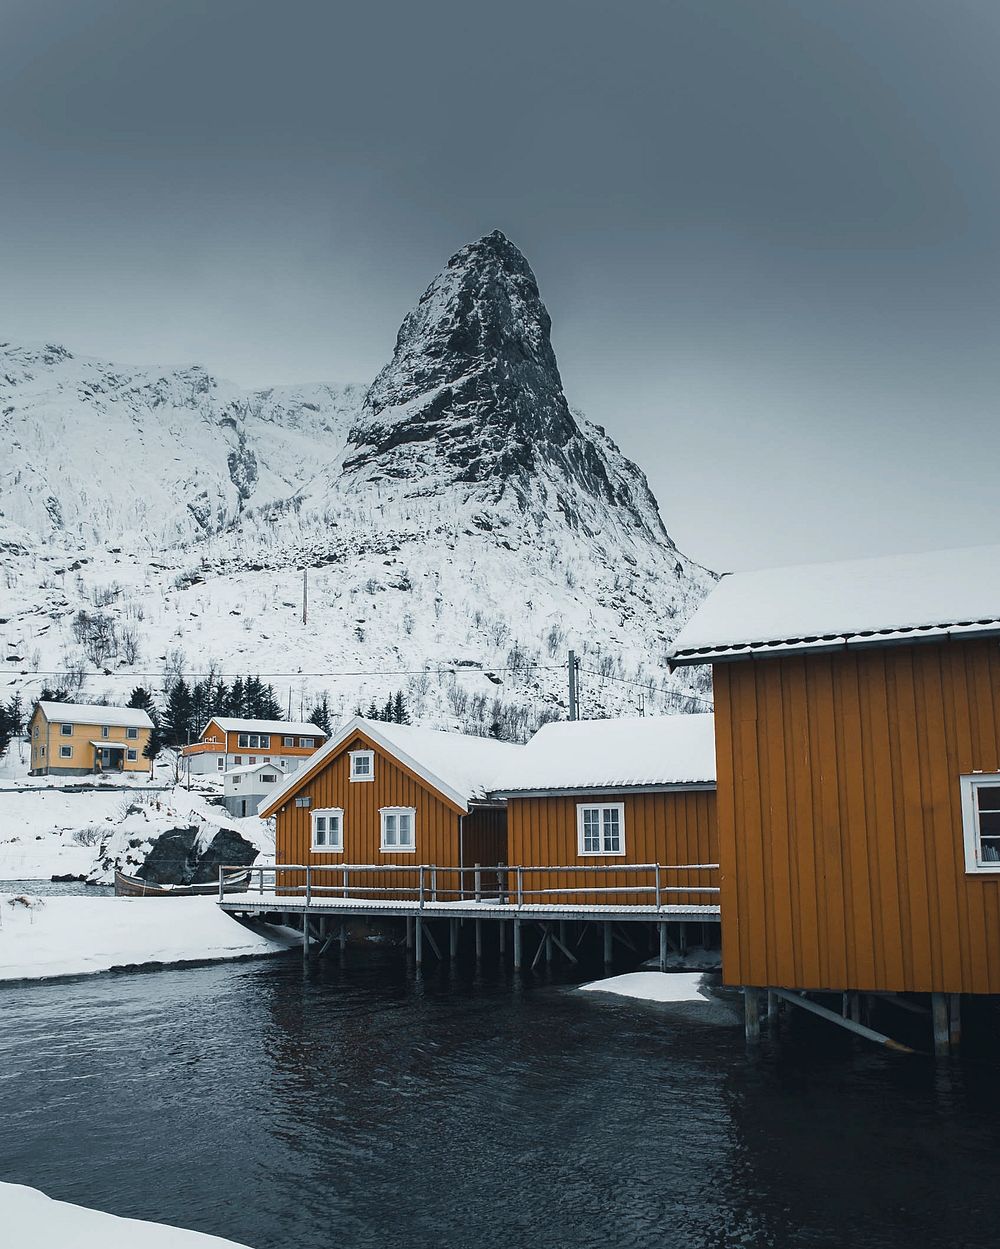 Yellow wooden cabins at Lofoten, Norway